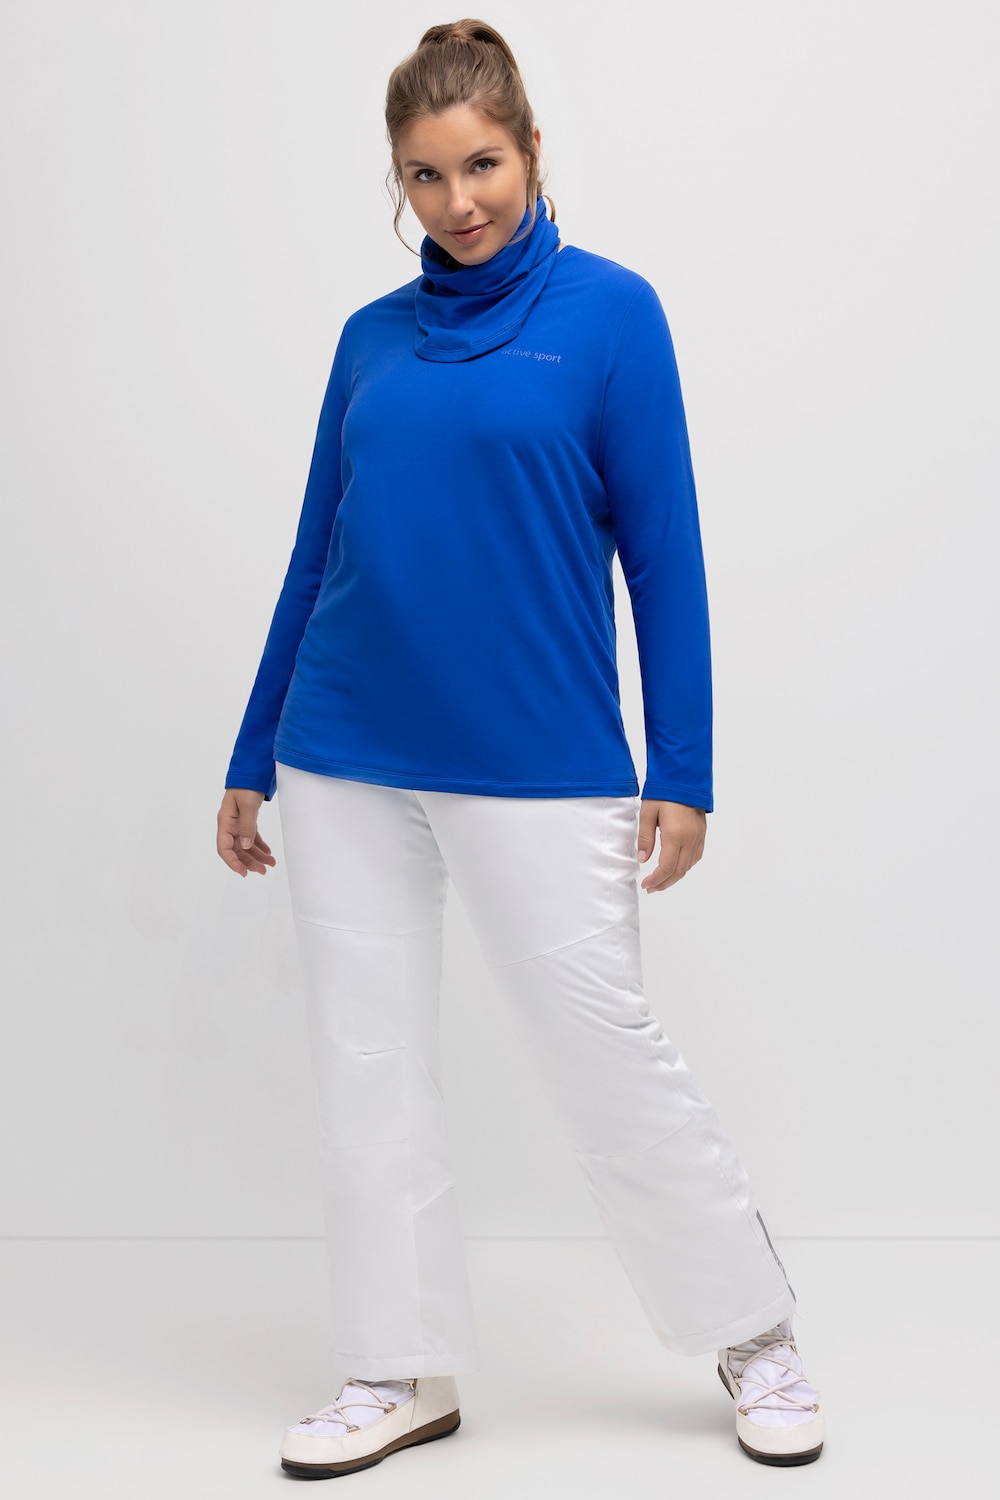 Grote Maten Functioneel skishirt, Dames, blauw, Maat: 58/60, Polyester, Ulla Popken